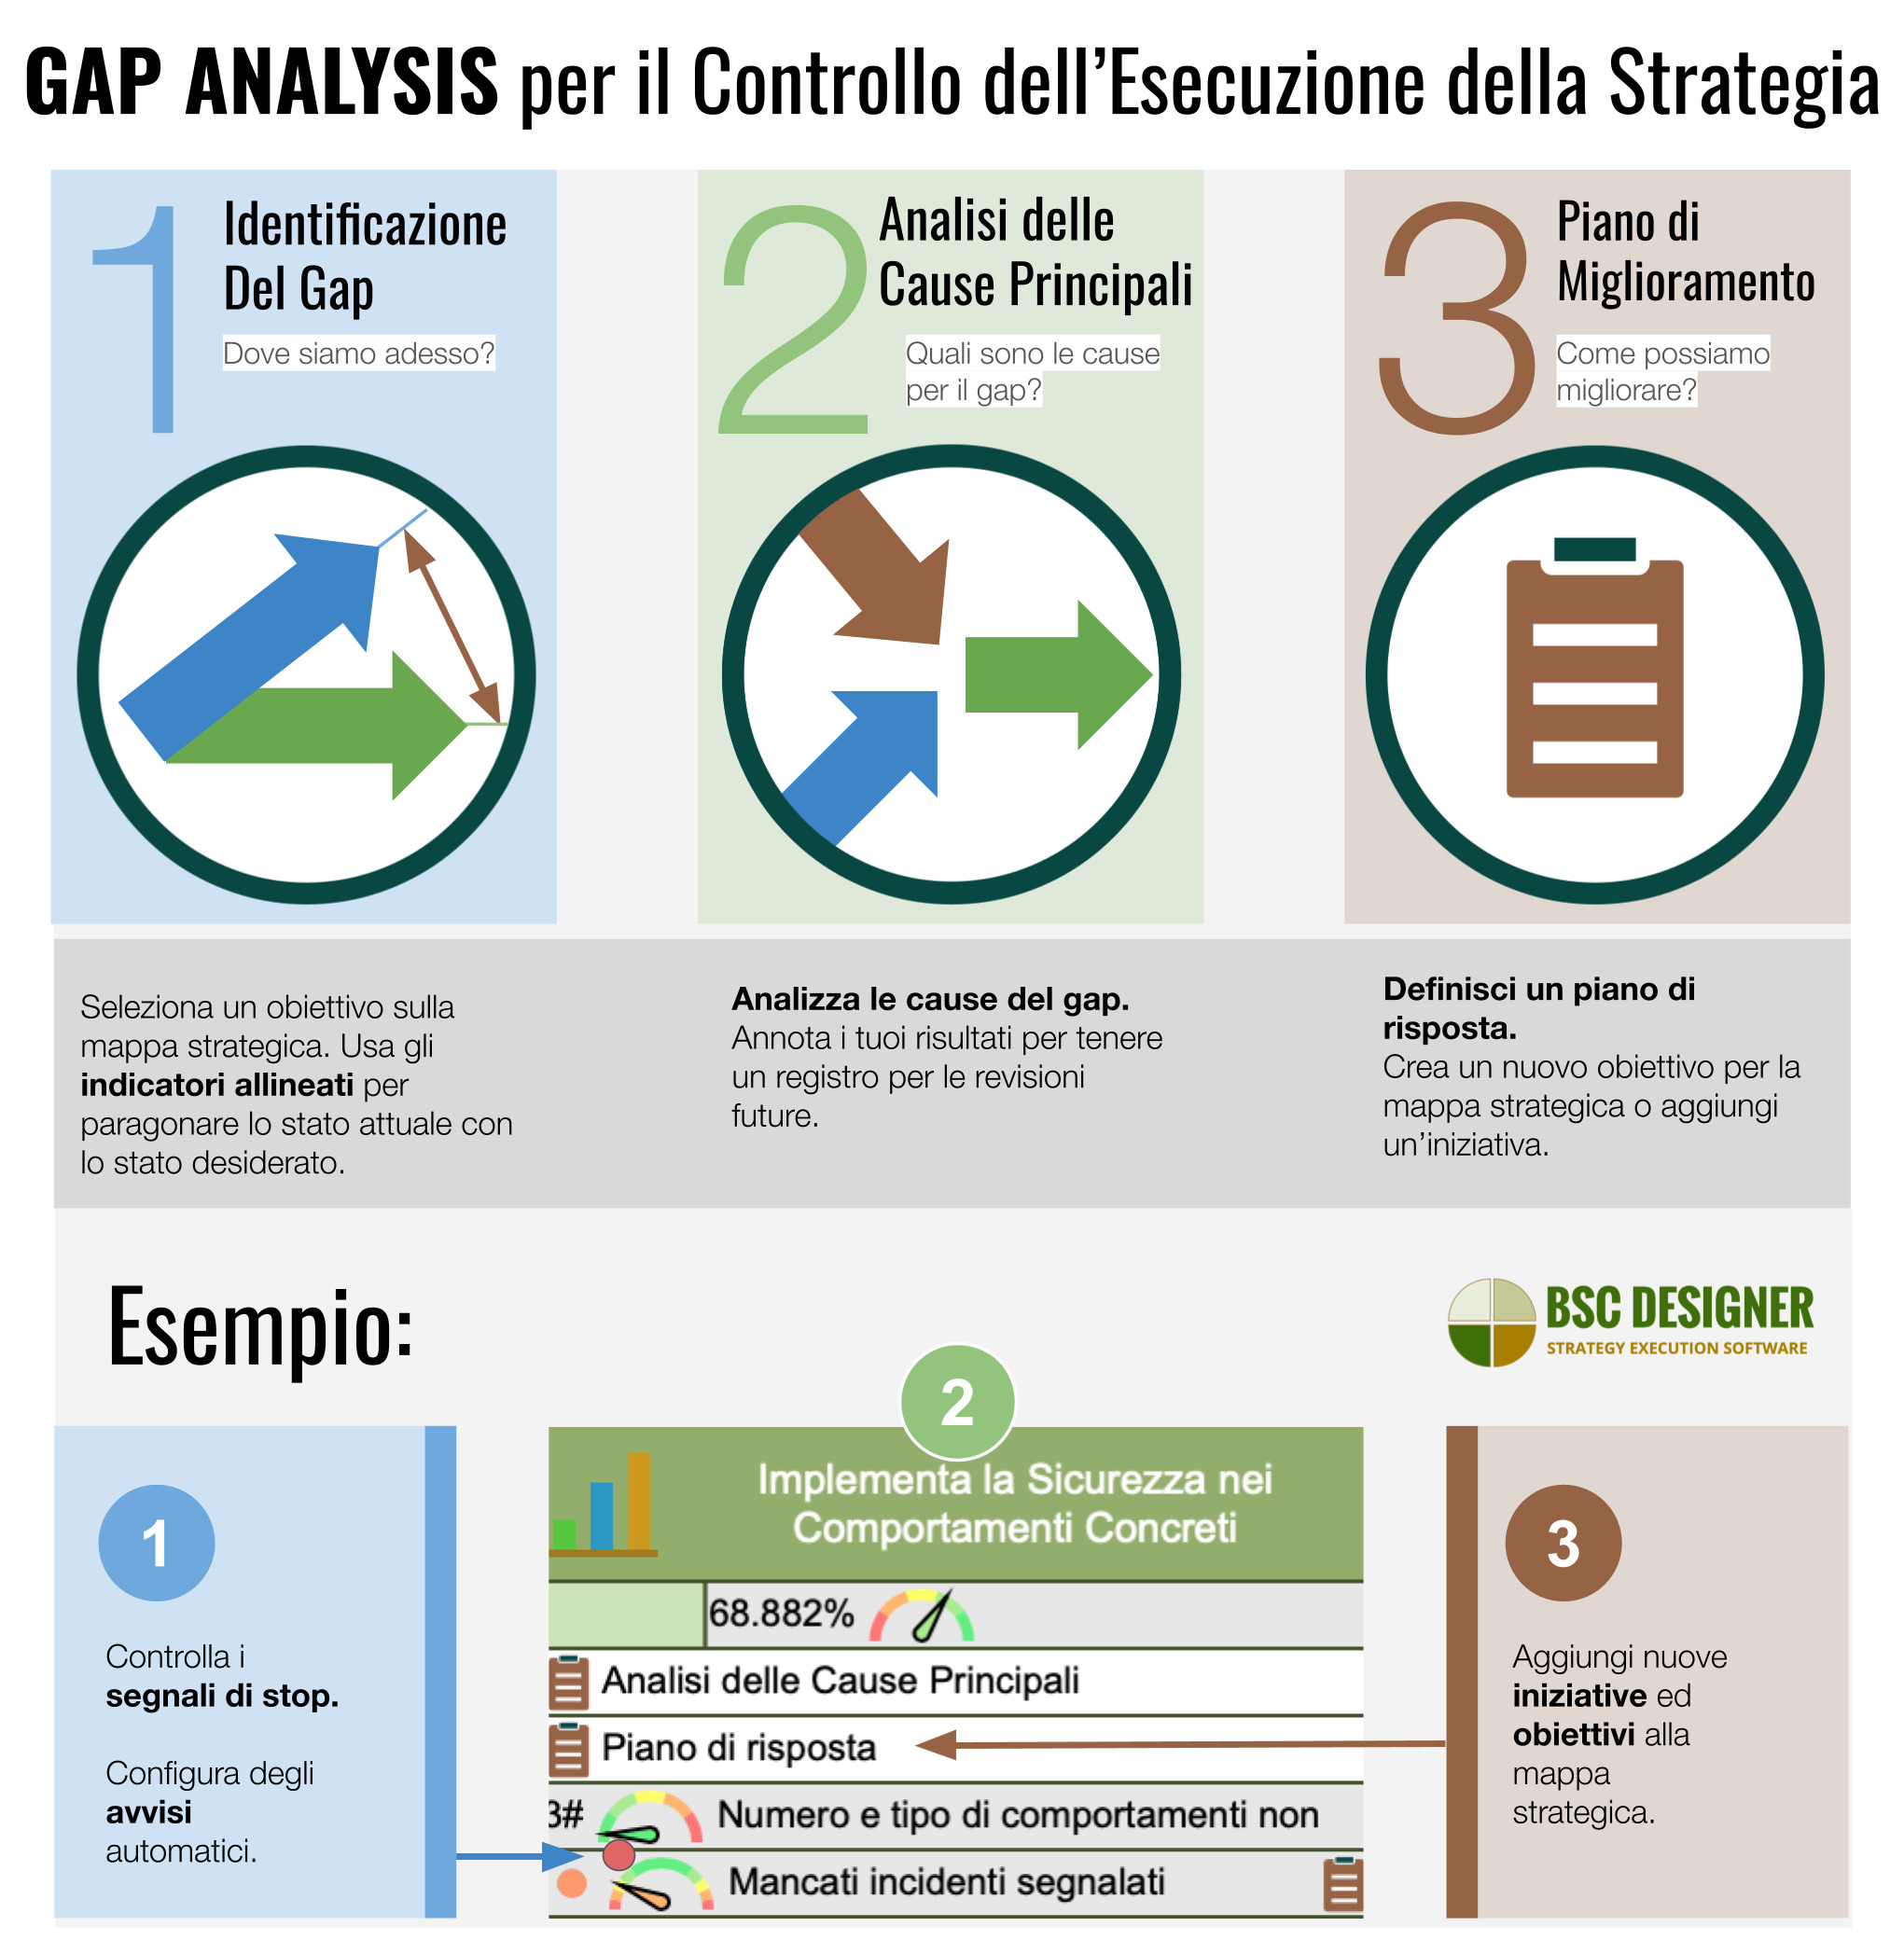 Gap analysis per l'esecuzione della strategia